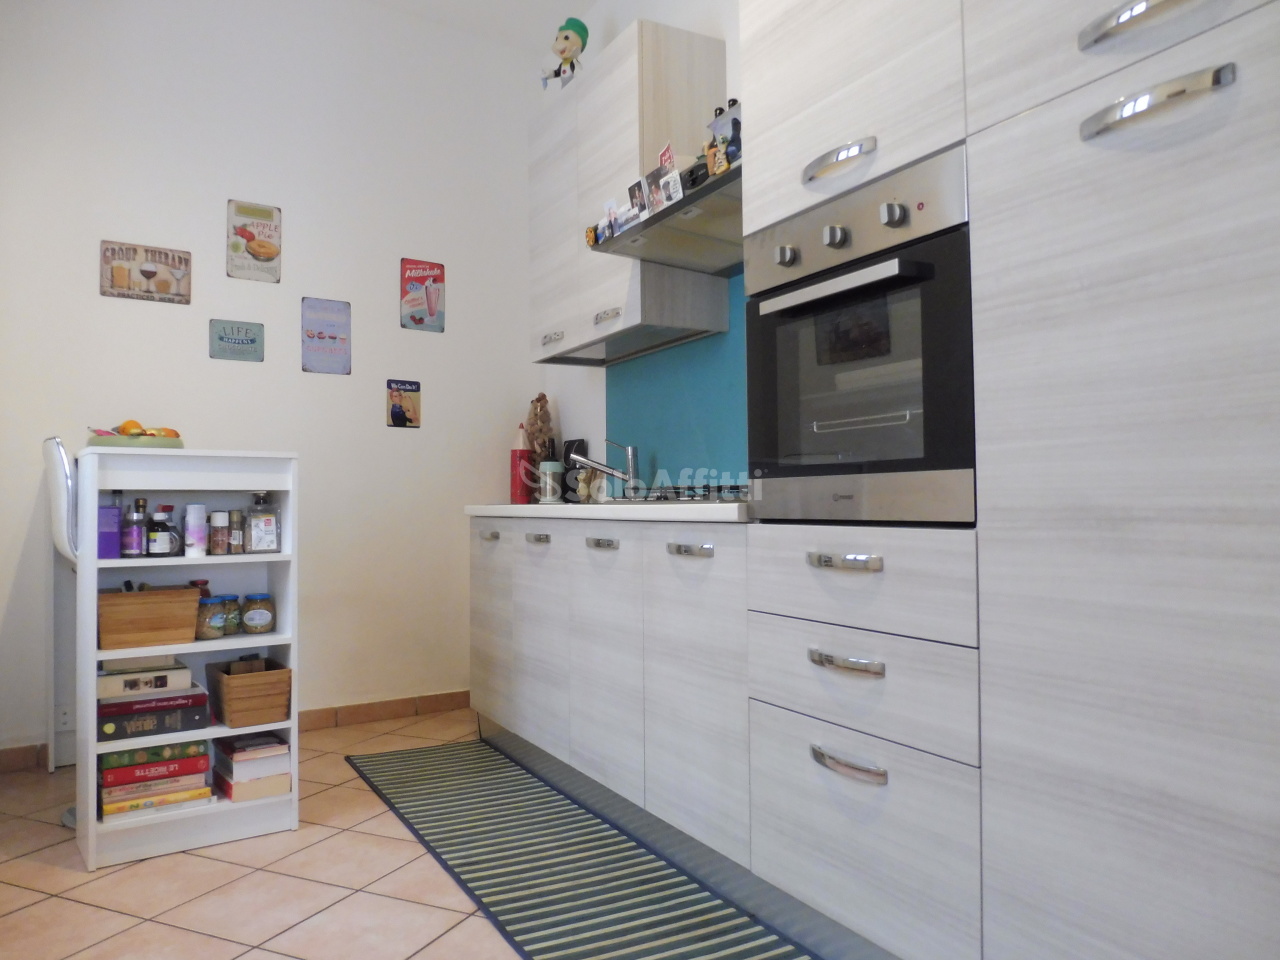 Appartamento in affitto a Uggiate-Trevano, 3 locali, prezzo € 870 | PortaleAgenzieImmobiliari.it